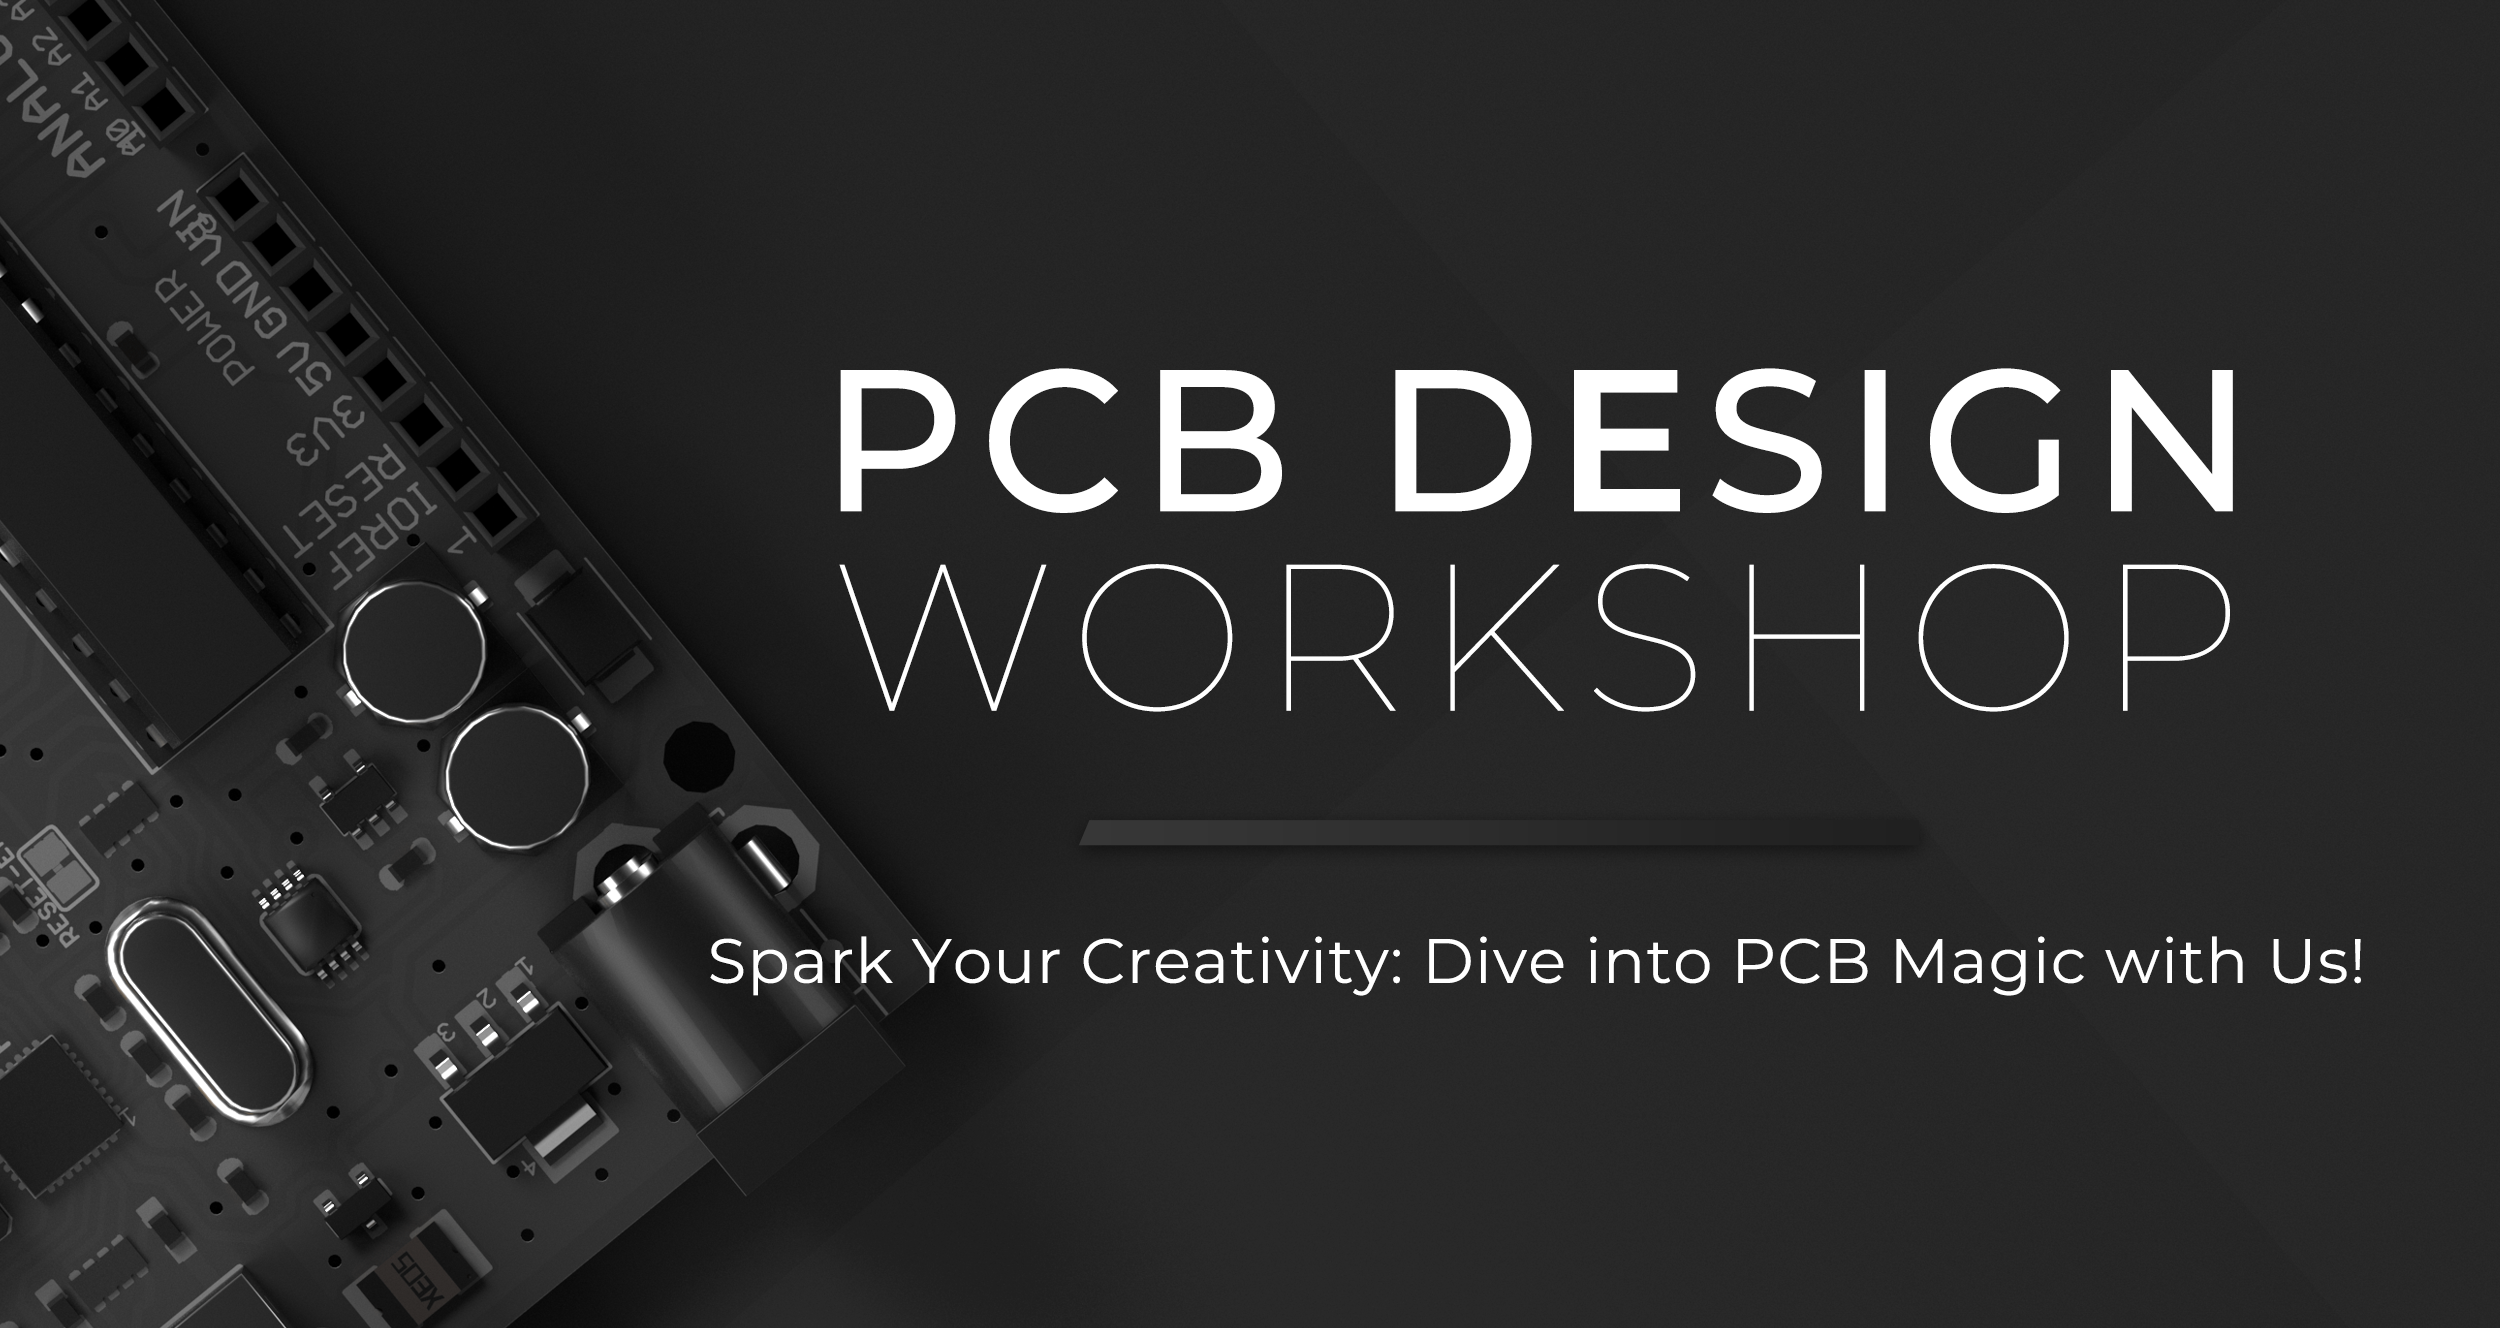 PCB design workshop